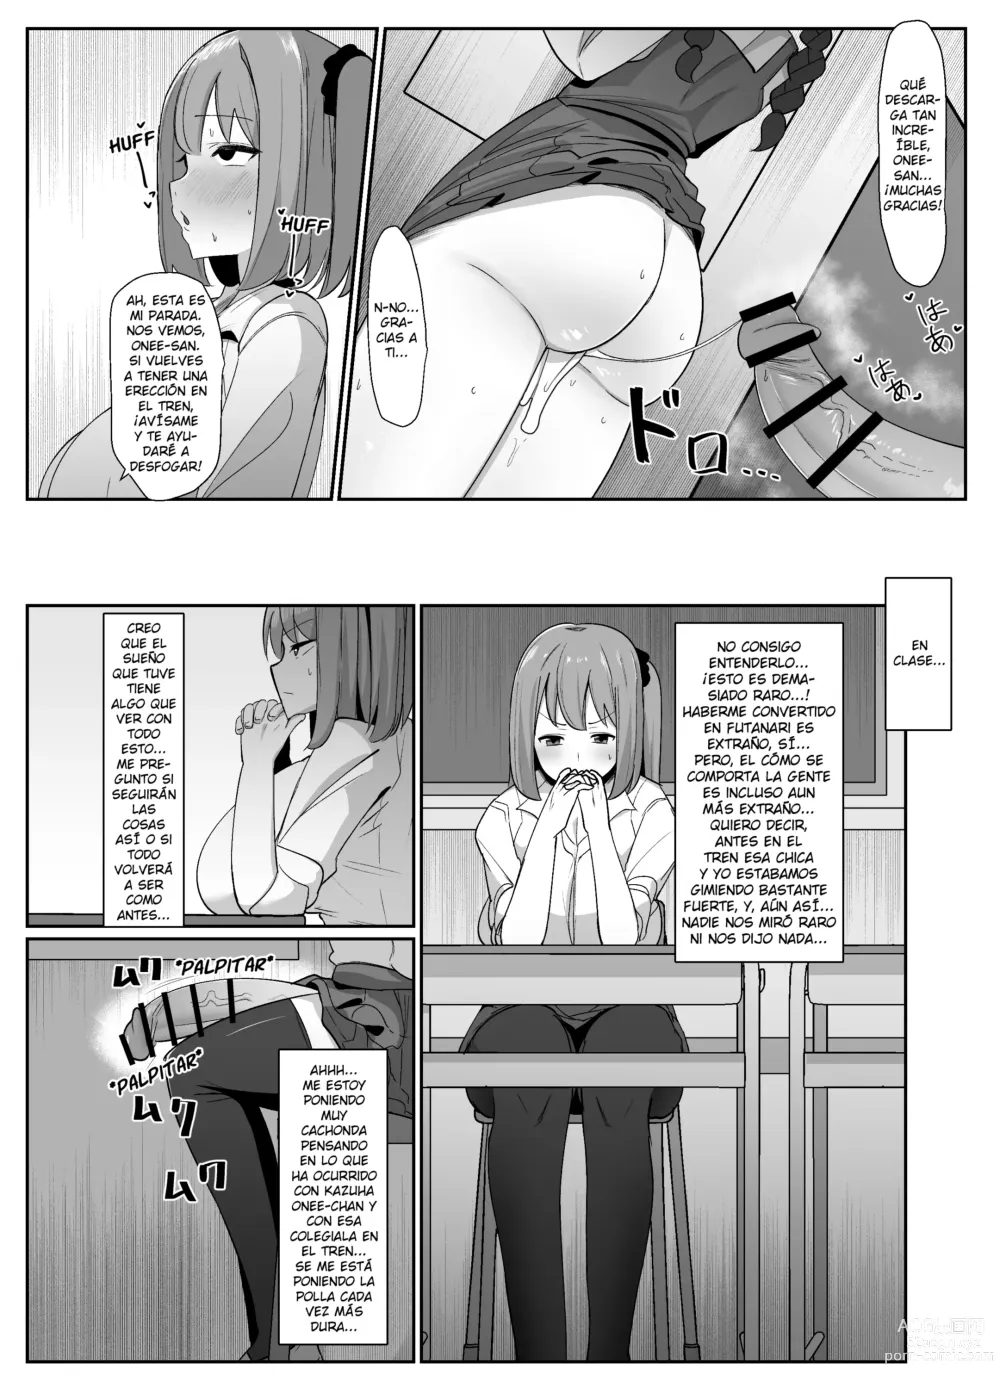 Page 9 of doujinshi ¡Un día me desperté y de repente hacer eyacular a las futanaris era lo más normal del mundo!